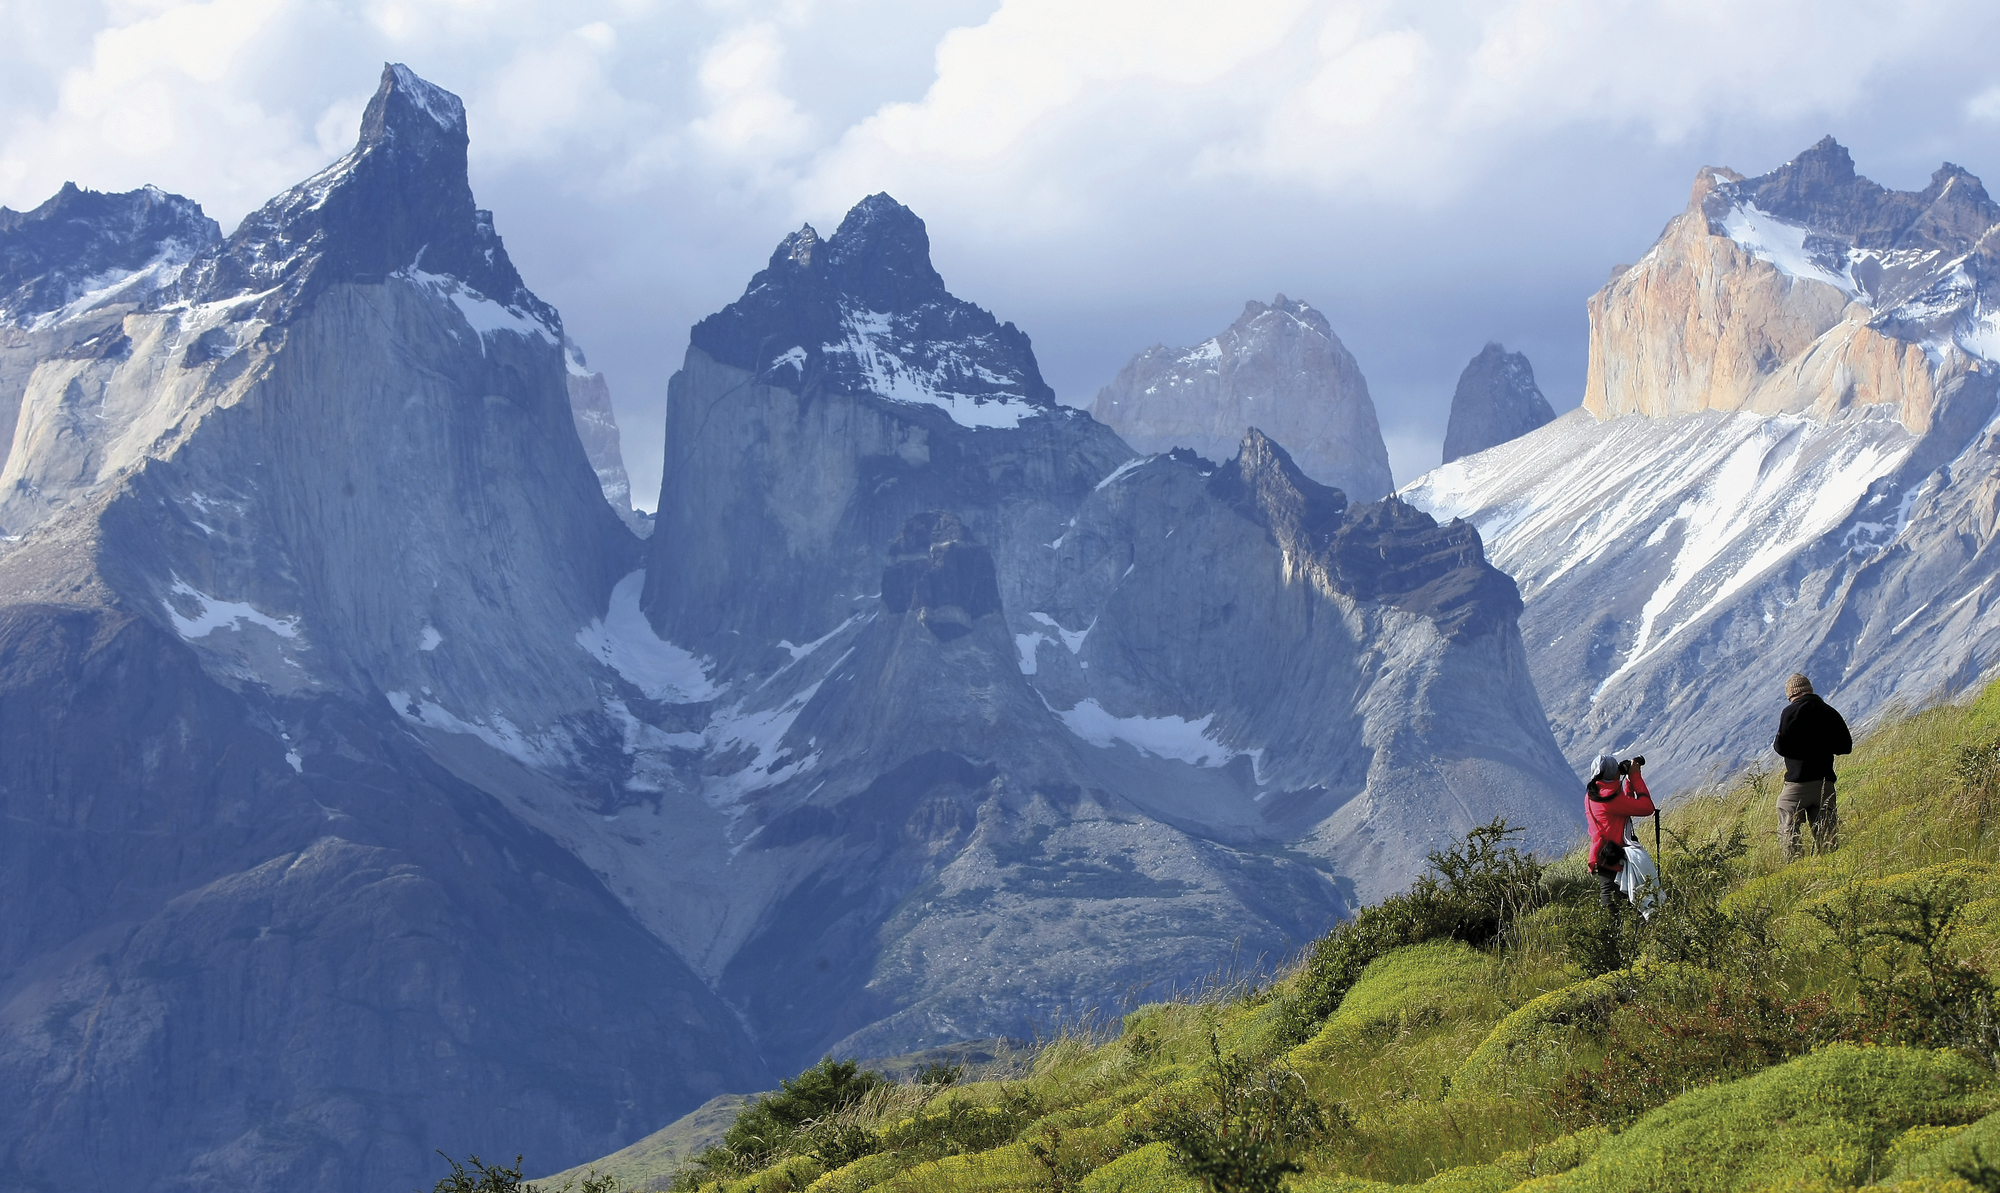 Chiles begeisternde Landschaften